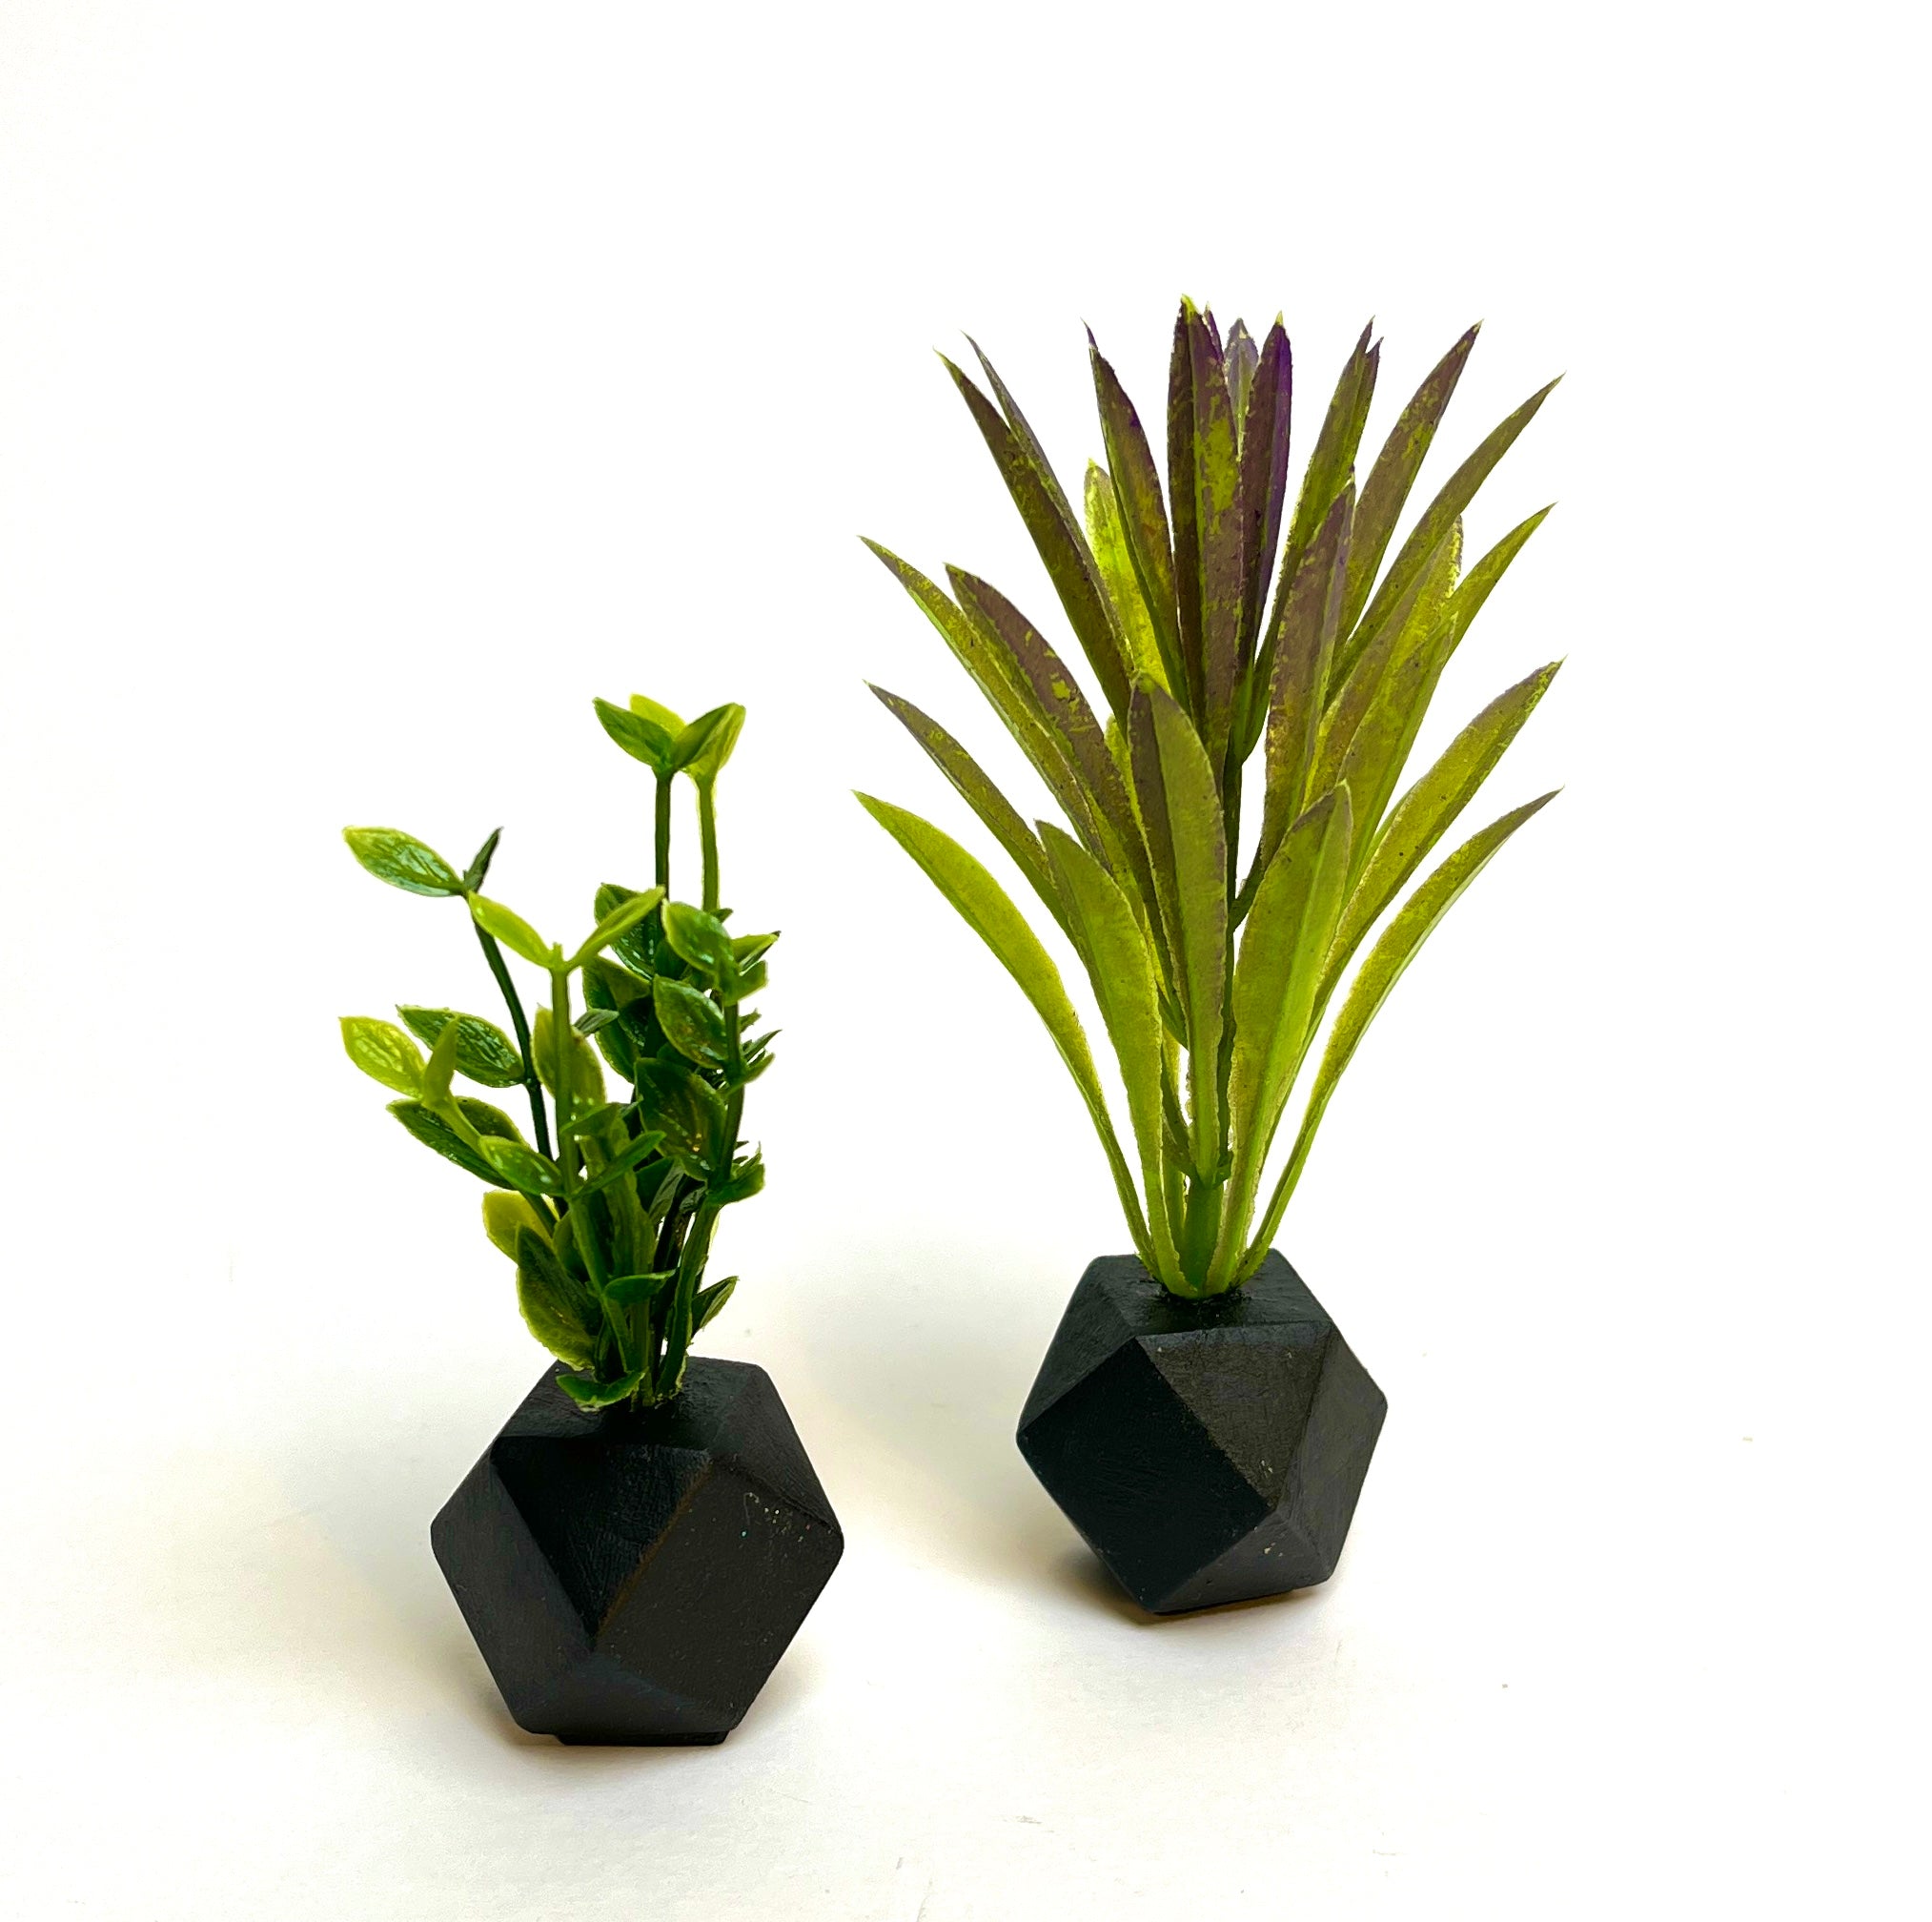 Dollhouse Miniature Set of 2 Plants - Black Pots